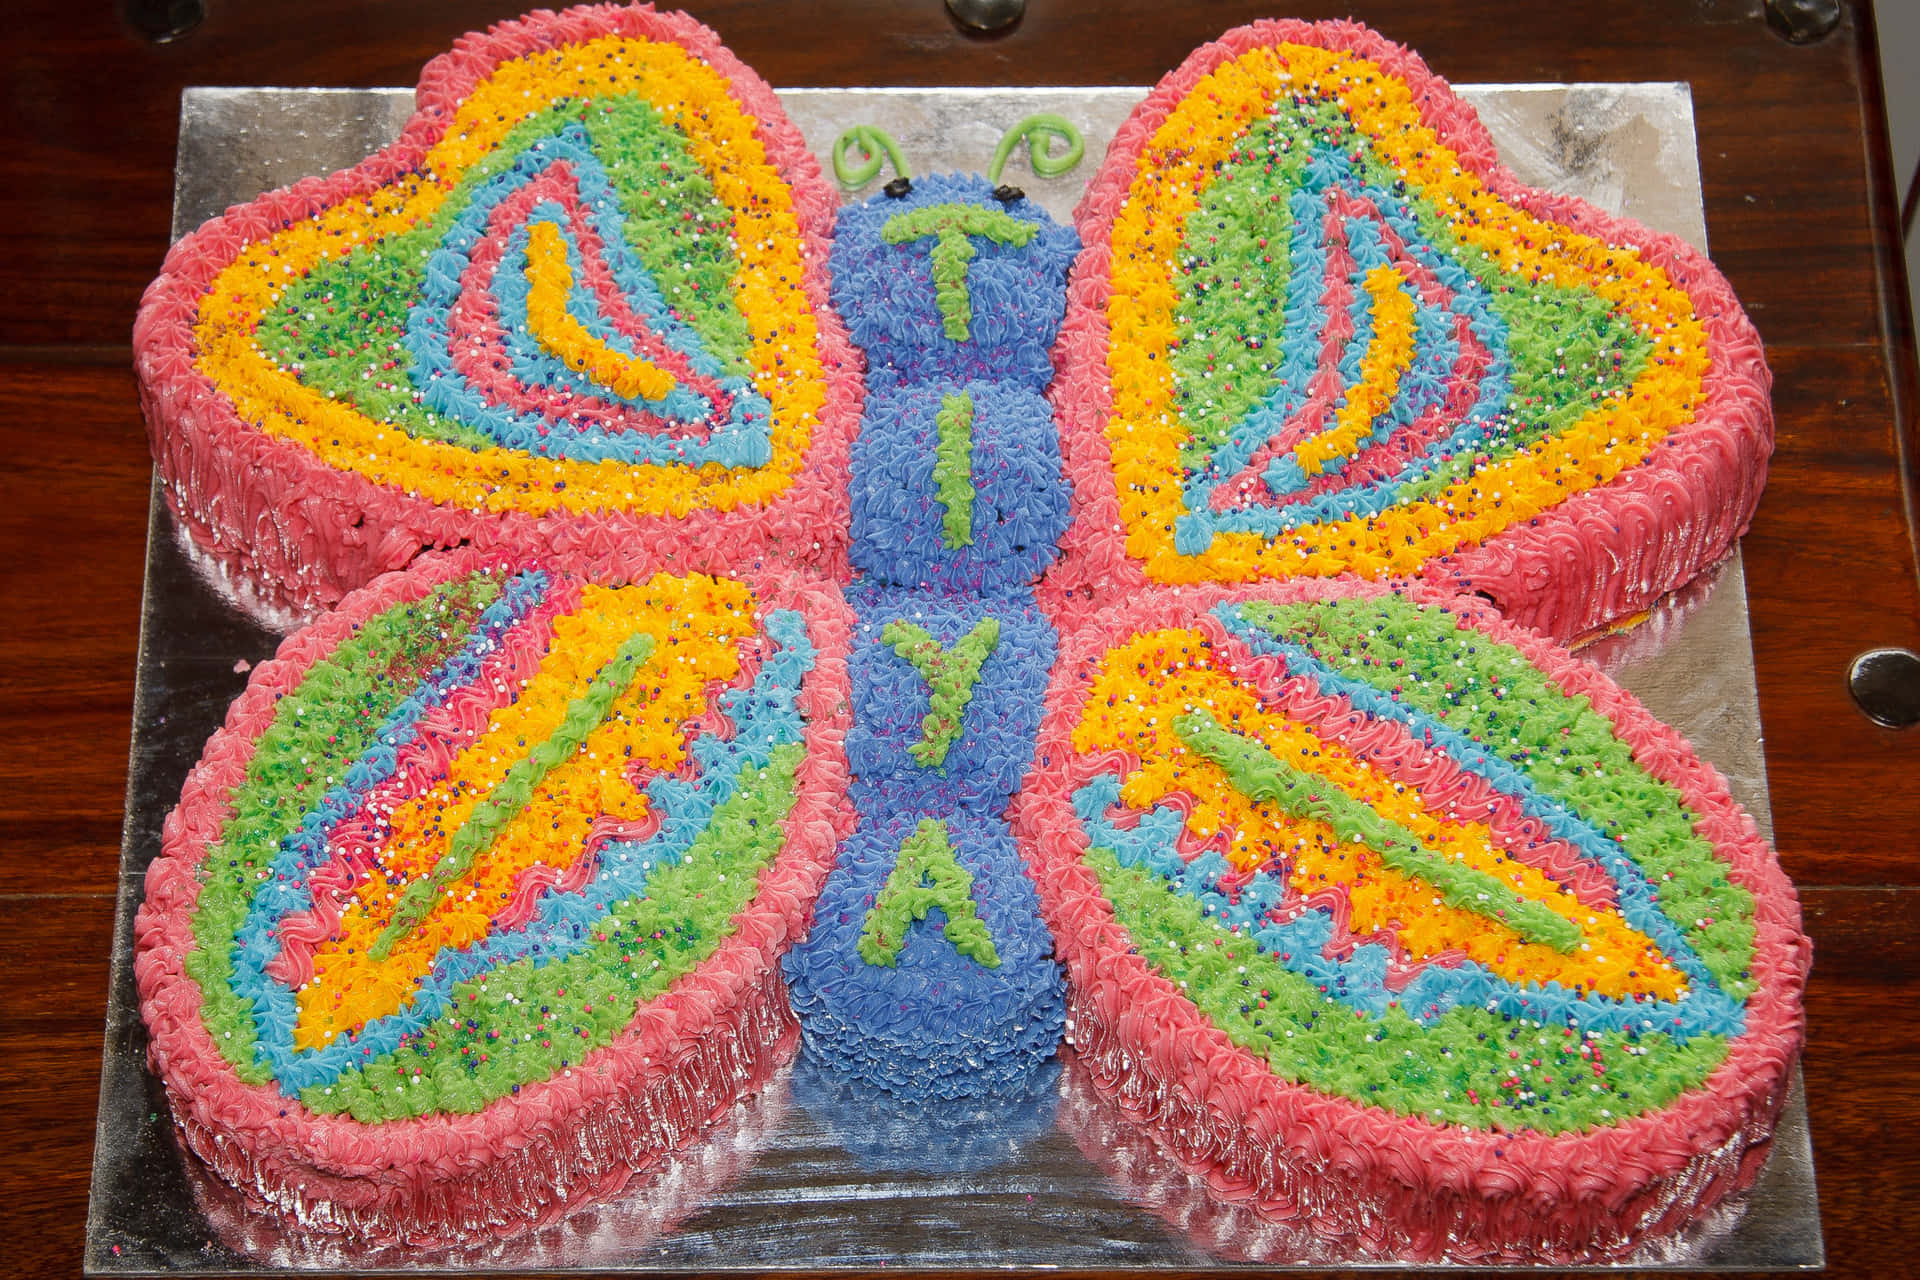 An elegant butterfly-themed cake design Wallpaper